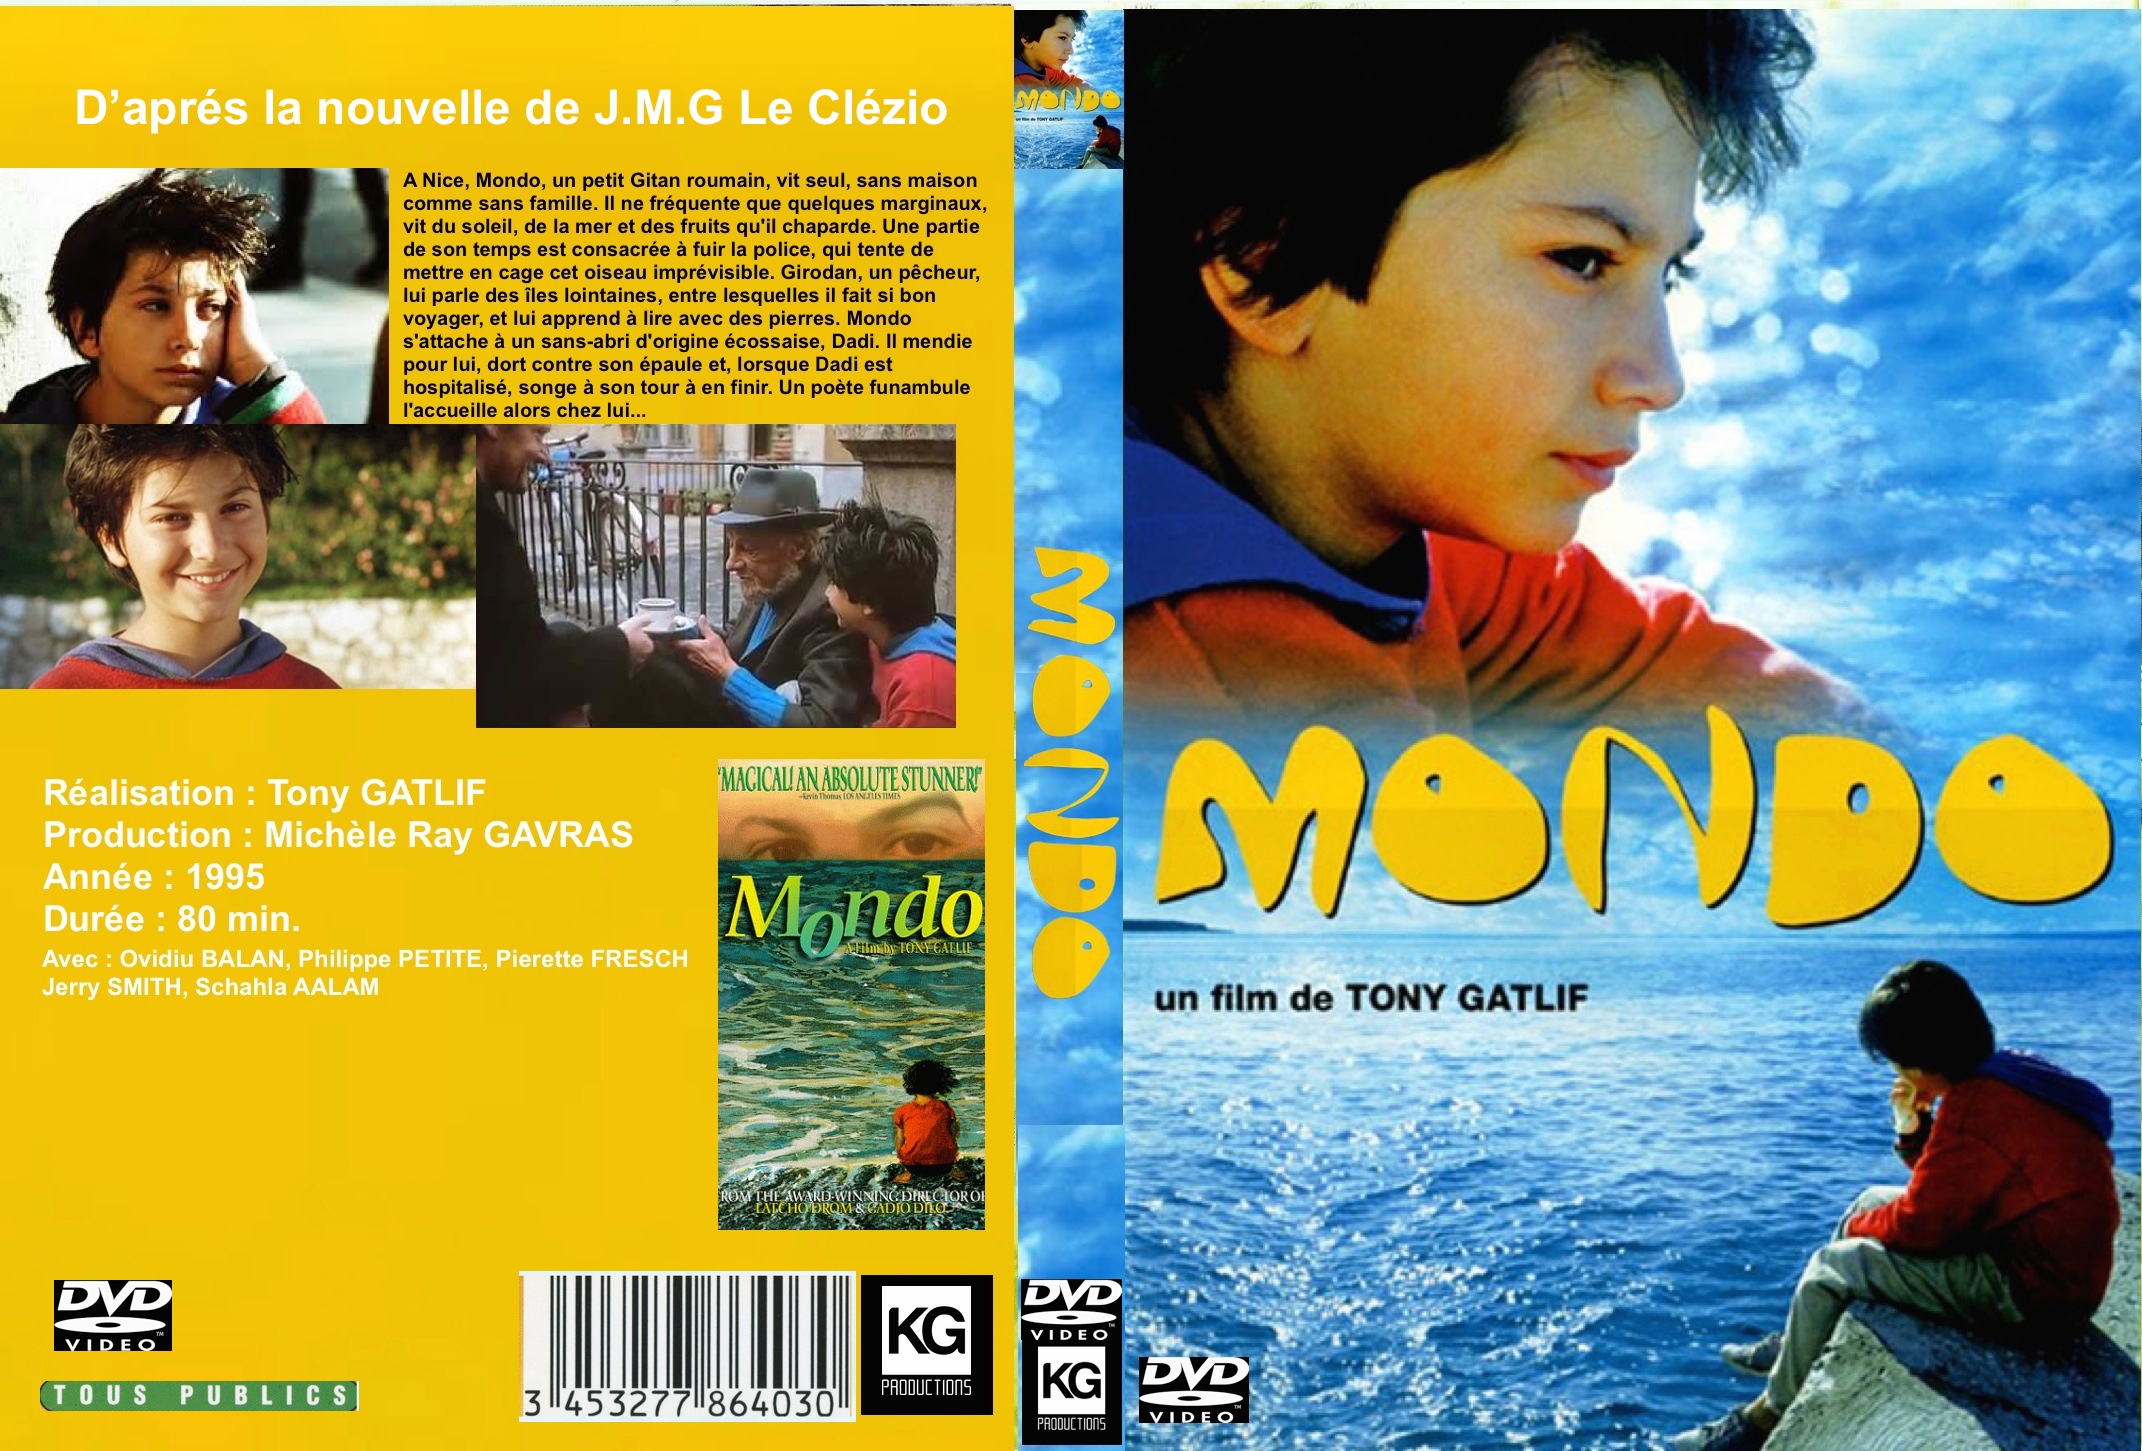 Jaquette DVD de Mon voisin totoro - Cinéma Passion